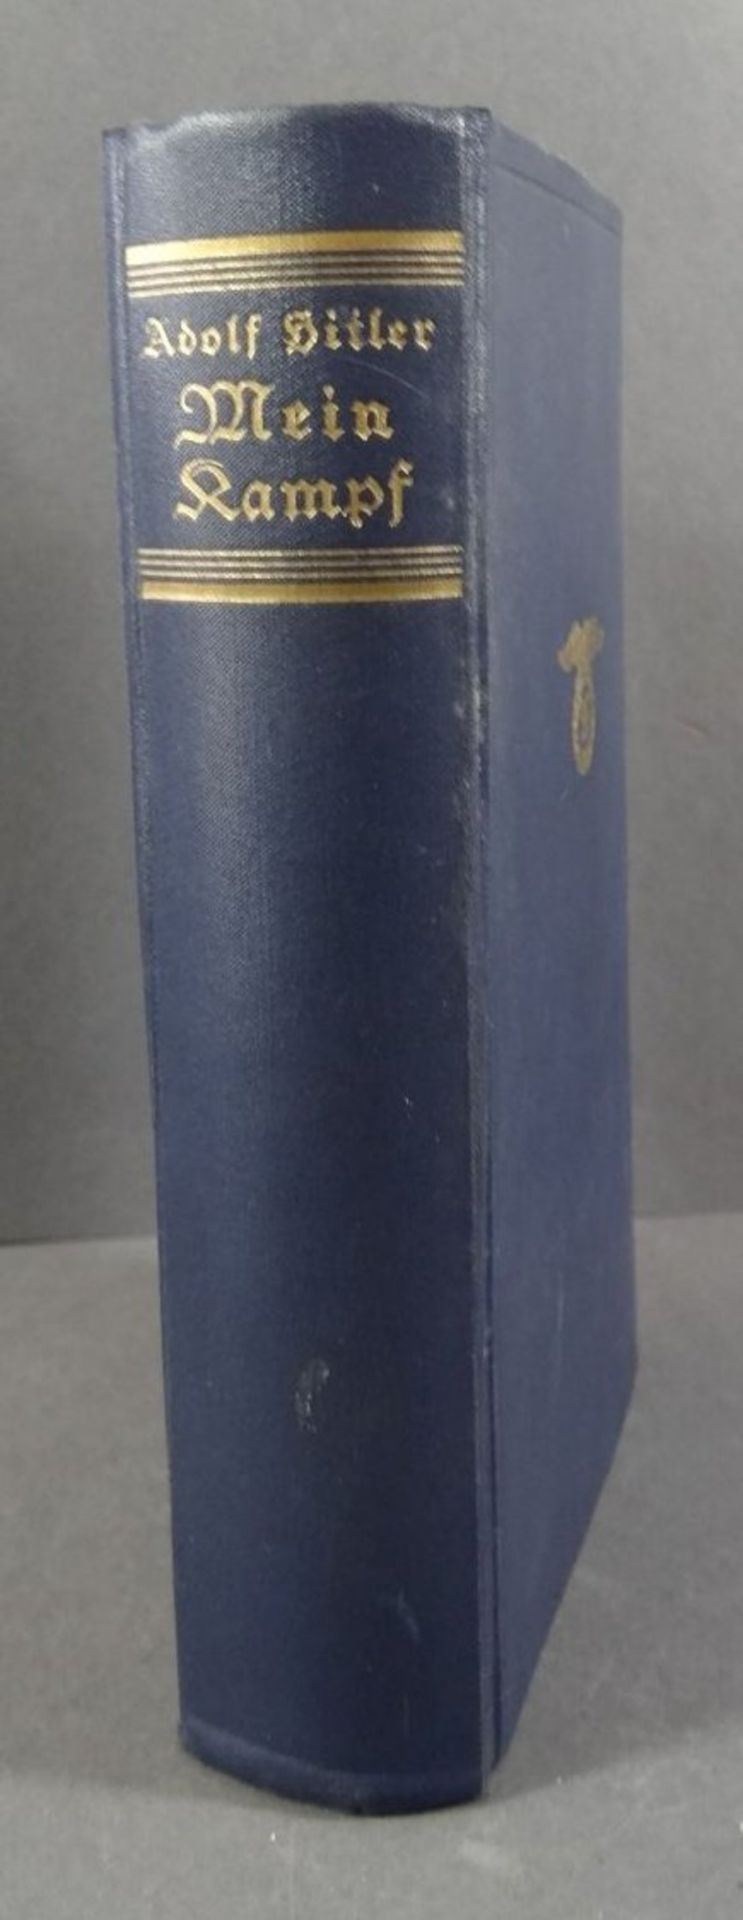 A.Hitler "Mein Kampf" 1933, blaue Ausgabe, gut erhalten, mehrfach gestempelt "preuss. Amtsgericht